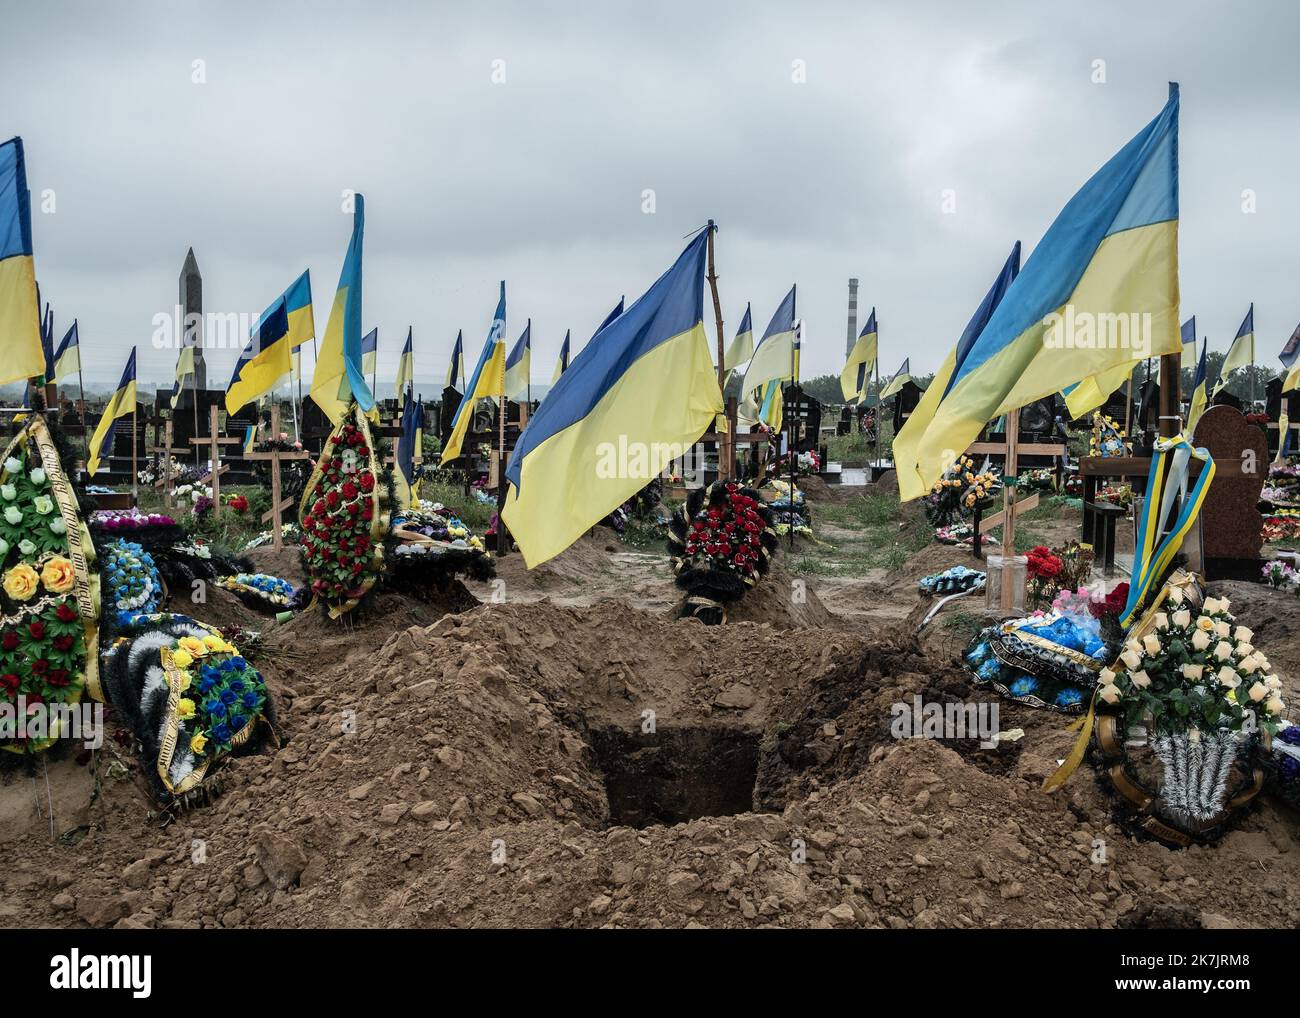 ©Sadak Souici / Le Pictorium/MAXPPP - Kharkiv 16/07/2022 Sadak Souici / Le Pictorium - 16/7/2022 - Ukraine / Kharkov / Kharkiv - Une tombe fraichement creusee pour l'enterrement d'un militaire ukrainien dans le cimetiere numero 18 de Kharkiv a Bezlyudivka. Le cimetiere N°18 de Kharkiv a Bezlioudivka qui comprend une section militaire datant d'il y a plusieurs annees, accueille les depouilles des soldats morts depuis le debut de la guerre contre la Russie. Samedi, plusieurs enterrements de soldats y ont eu lieu. / 16/7/2022 - Ukraine / Kharkov / Kharkiv - A freshly dug grave for the burial of a Stock Photo